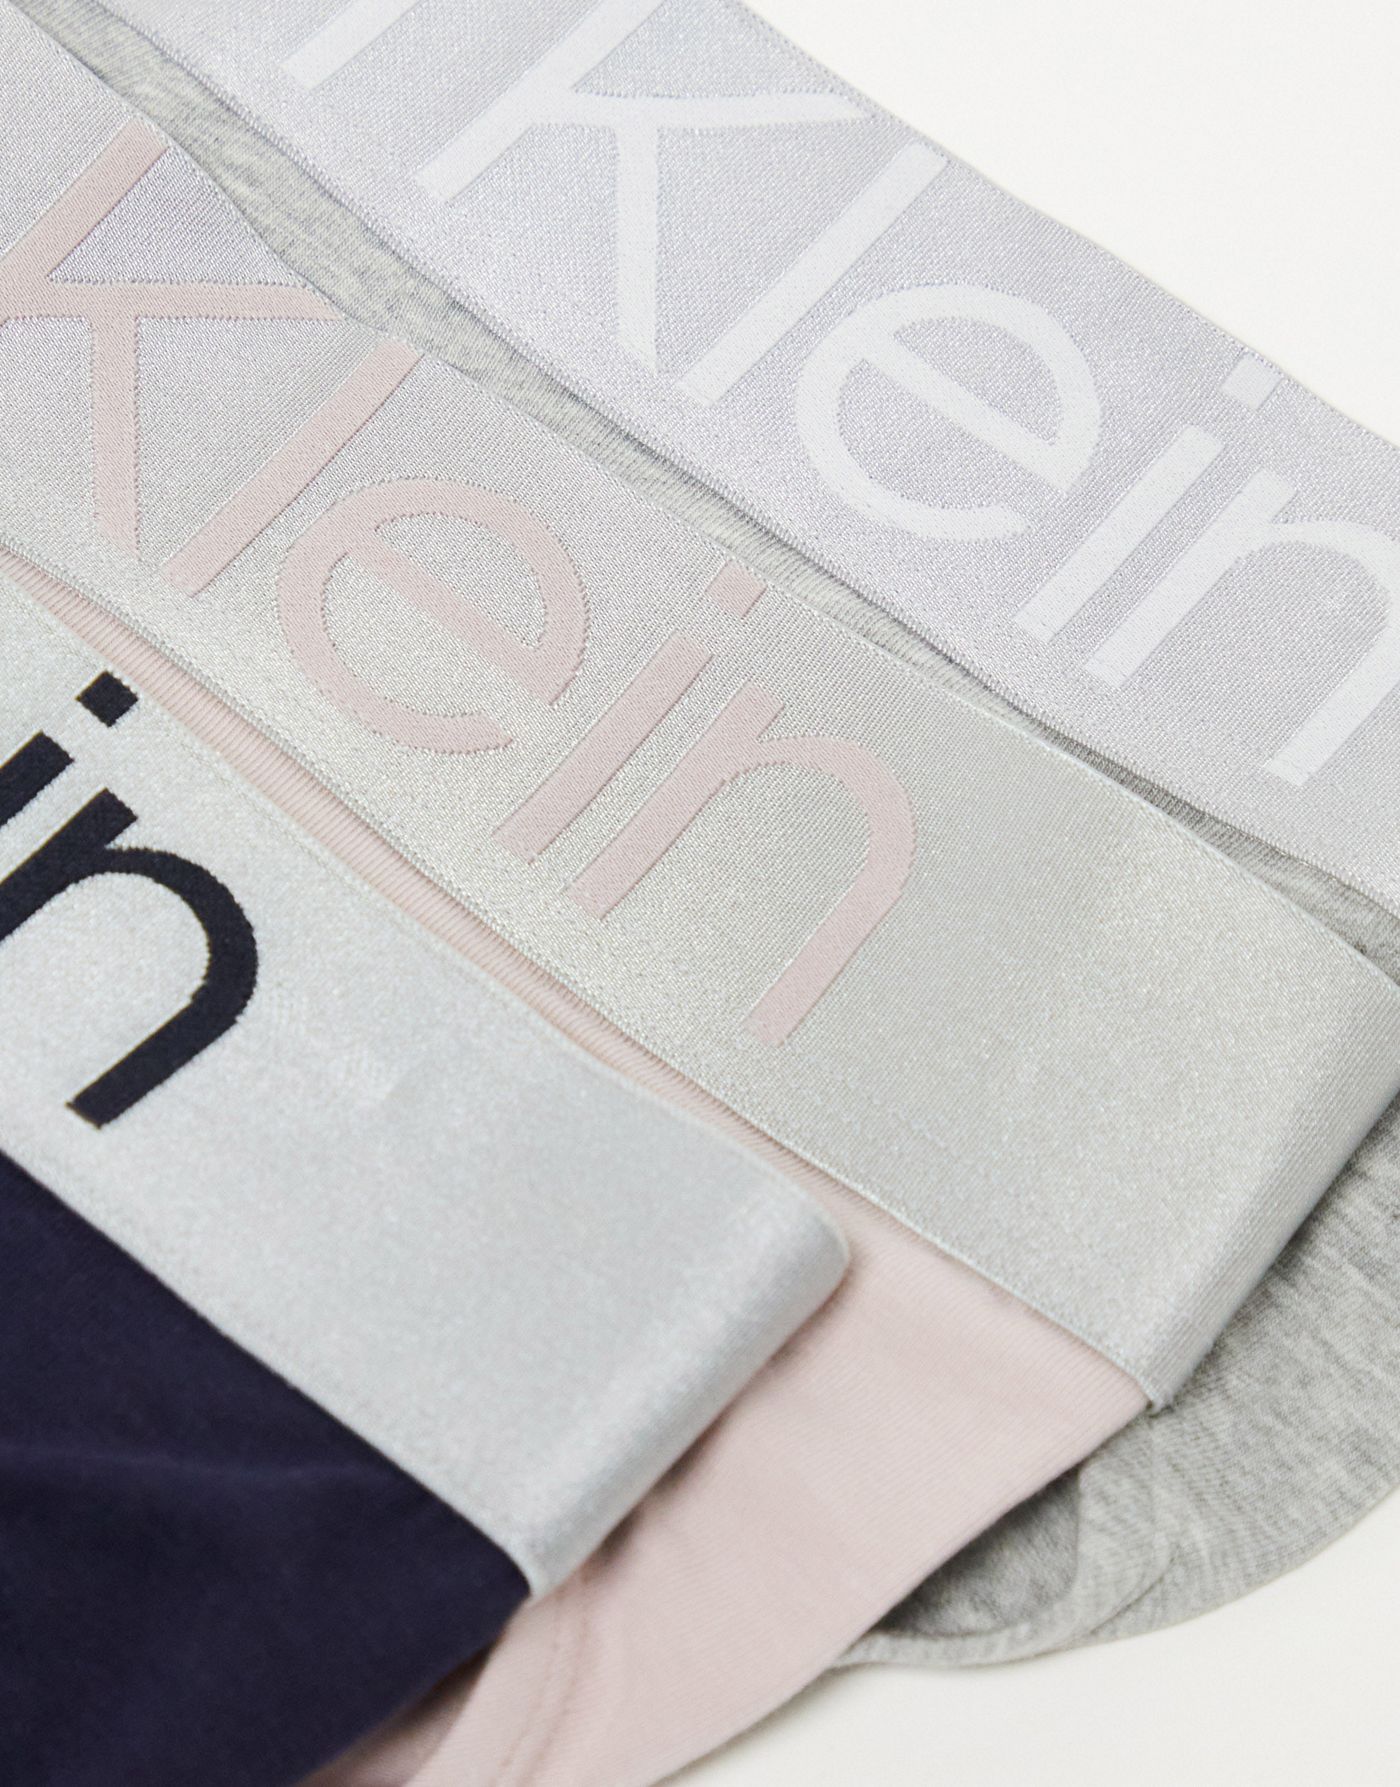 Calvin Klein cotton steel 3-pack stretch briefs in multi